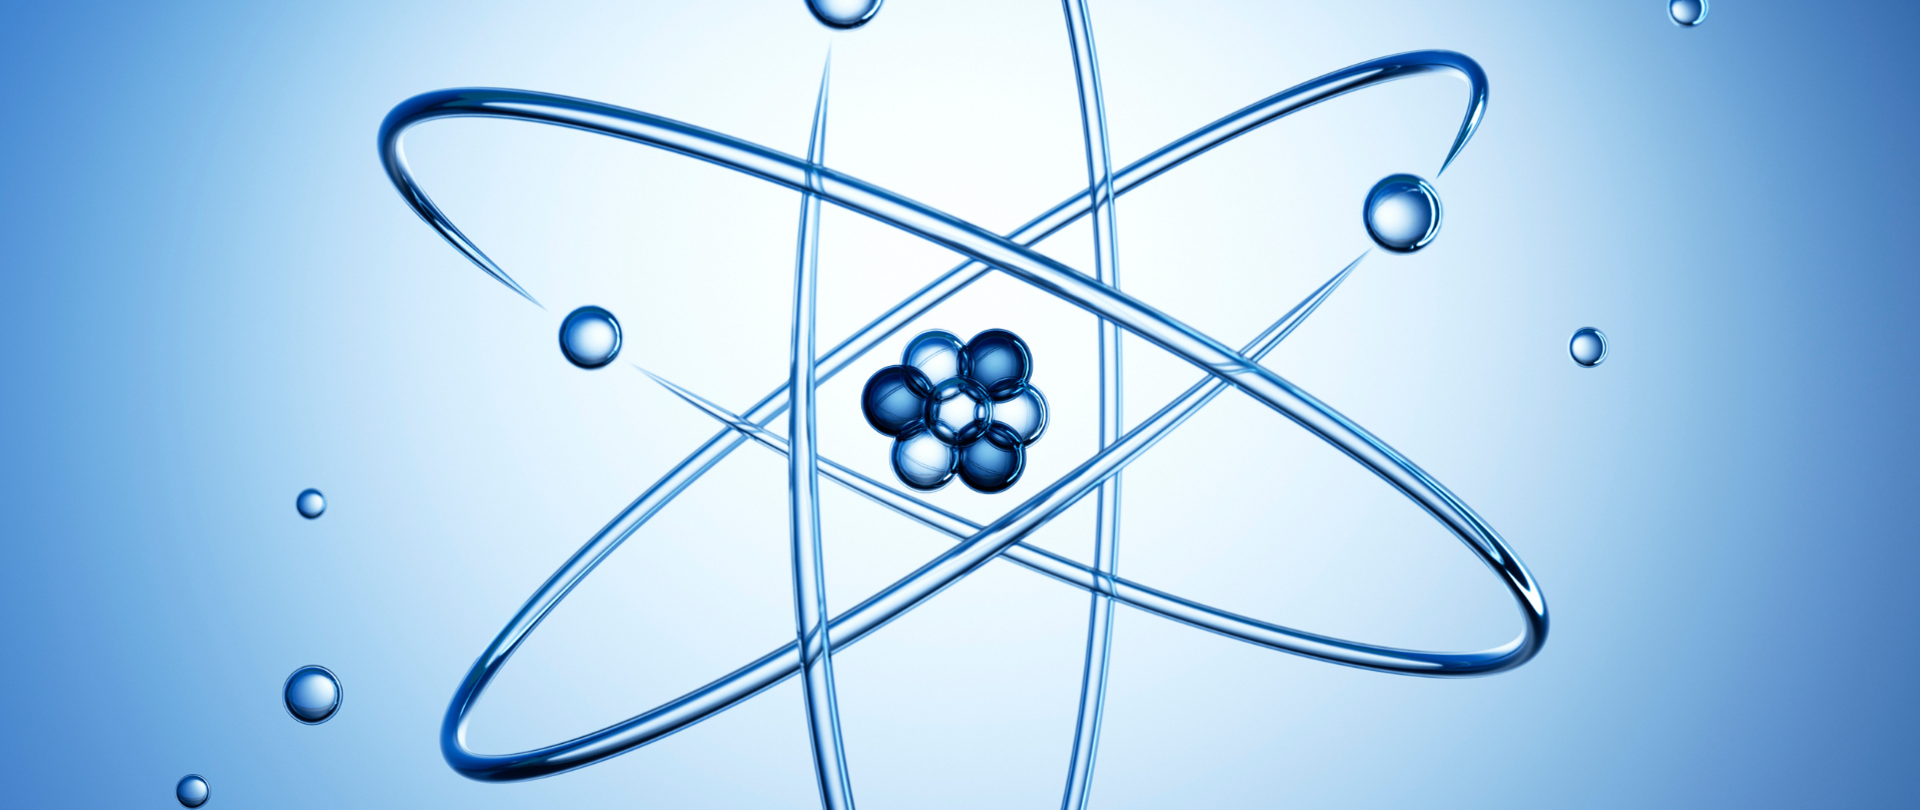 Na niebieskim tle wizualizacja jadra atomowego z elektronami ( rozrzucone niebieskie małe kulki).